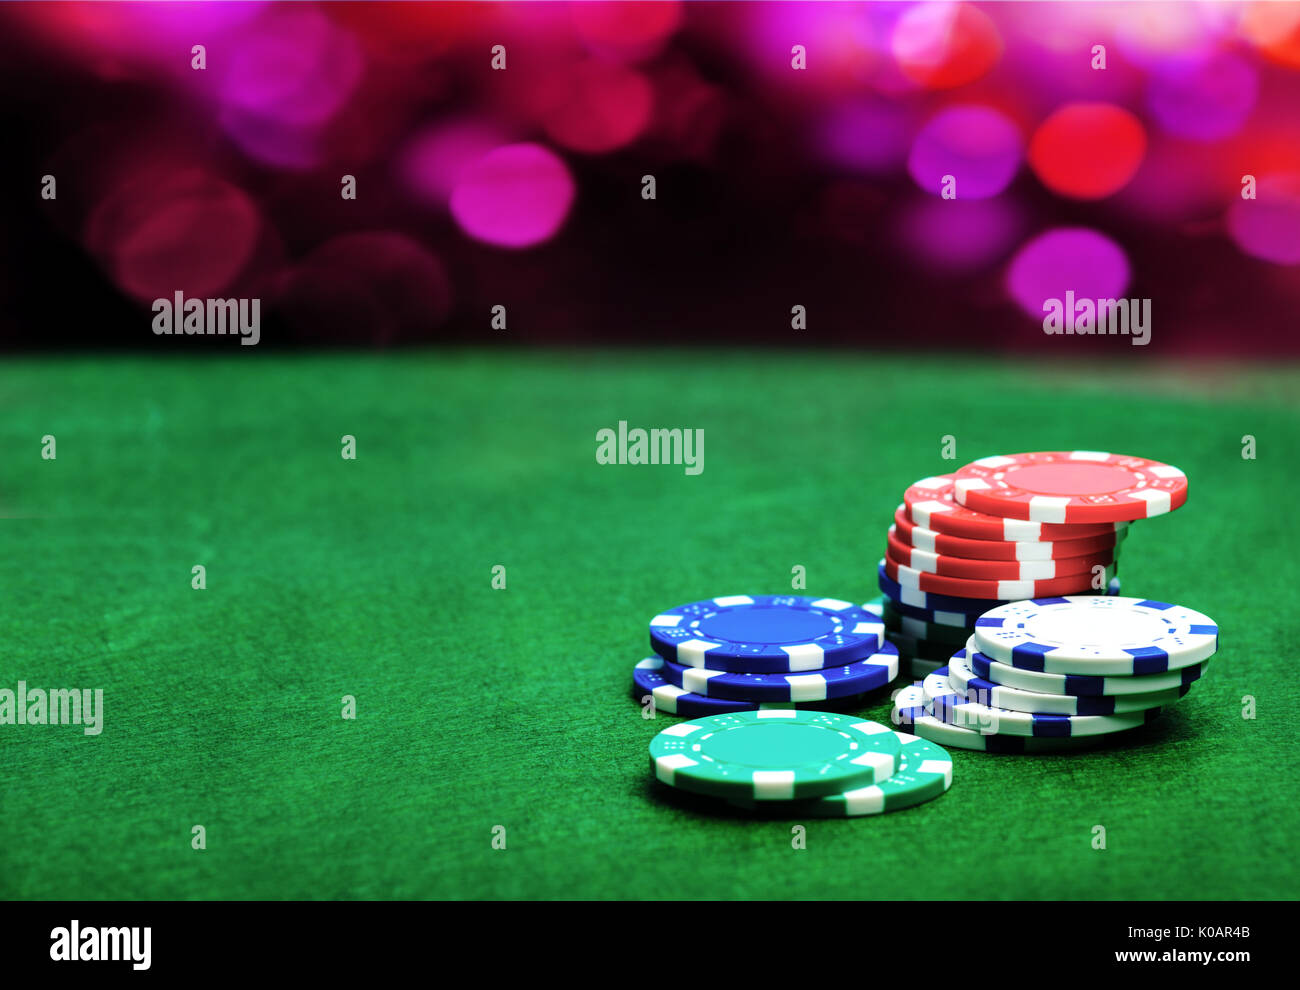 Casino Hintergrund und Chips, Poker chips auf einem grünen Tisch. Poker spiel Konzept Stockfoto